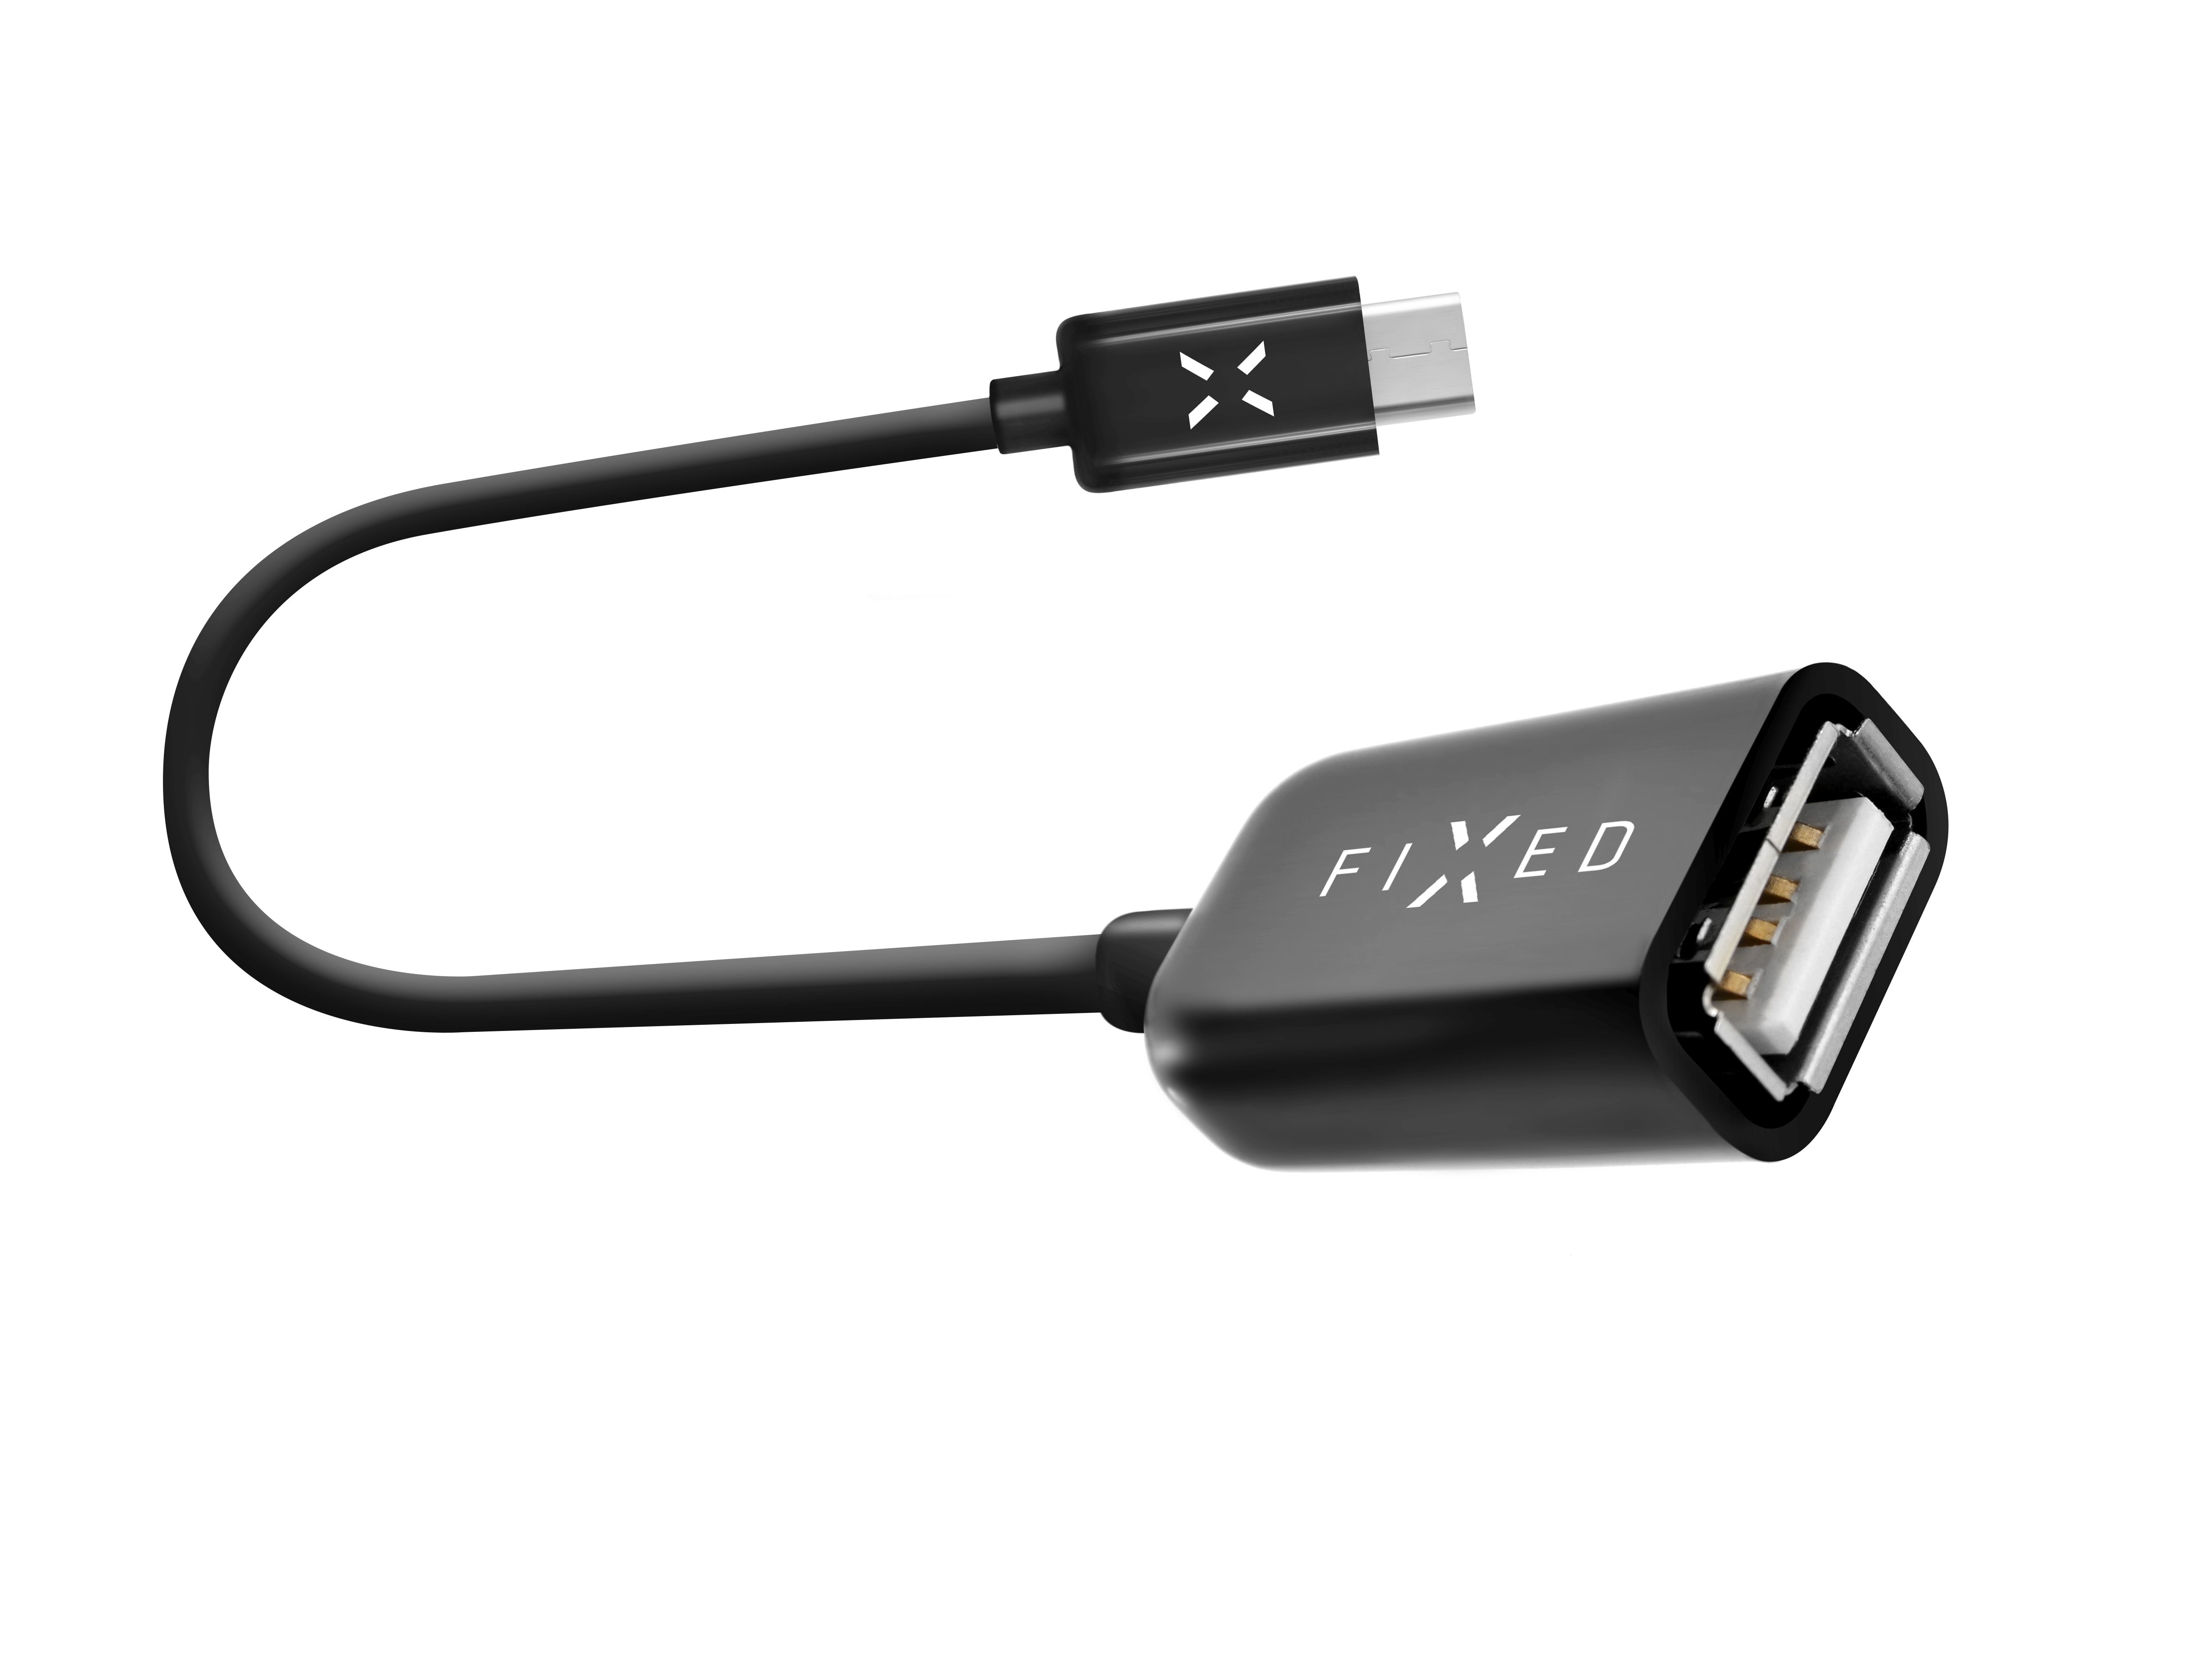 OTG datový kabel s konektory USB-C/USB-A, USB 2.0, 20 cm, černý